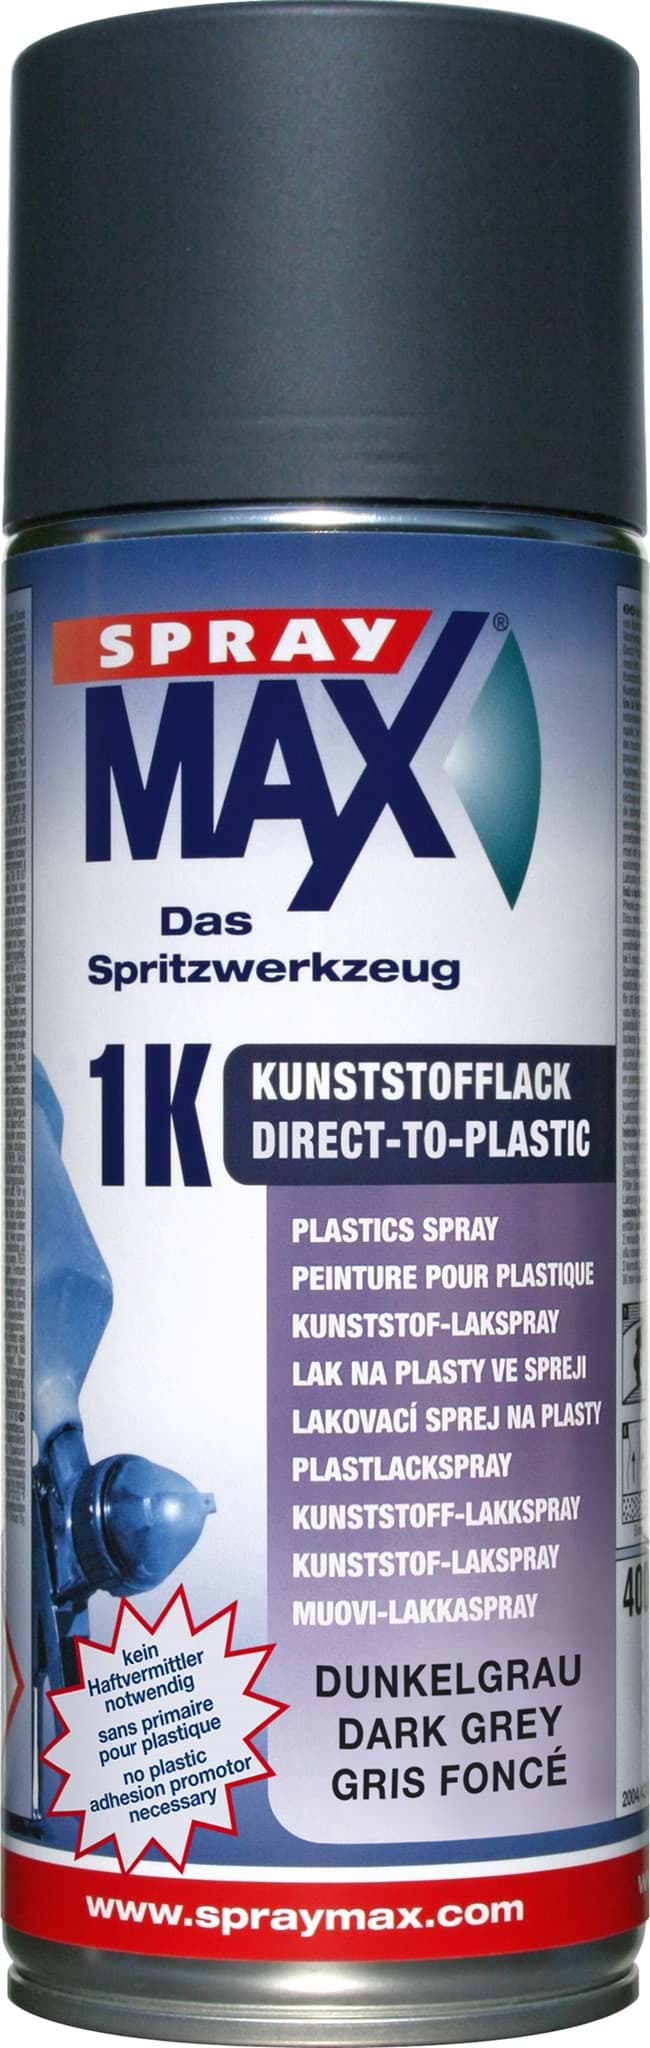 SprayMax 1K DTP-Kunststofflack Dunkelgrau 400ml 680044 resmi